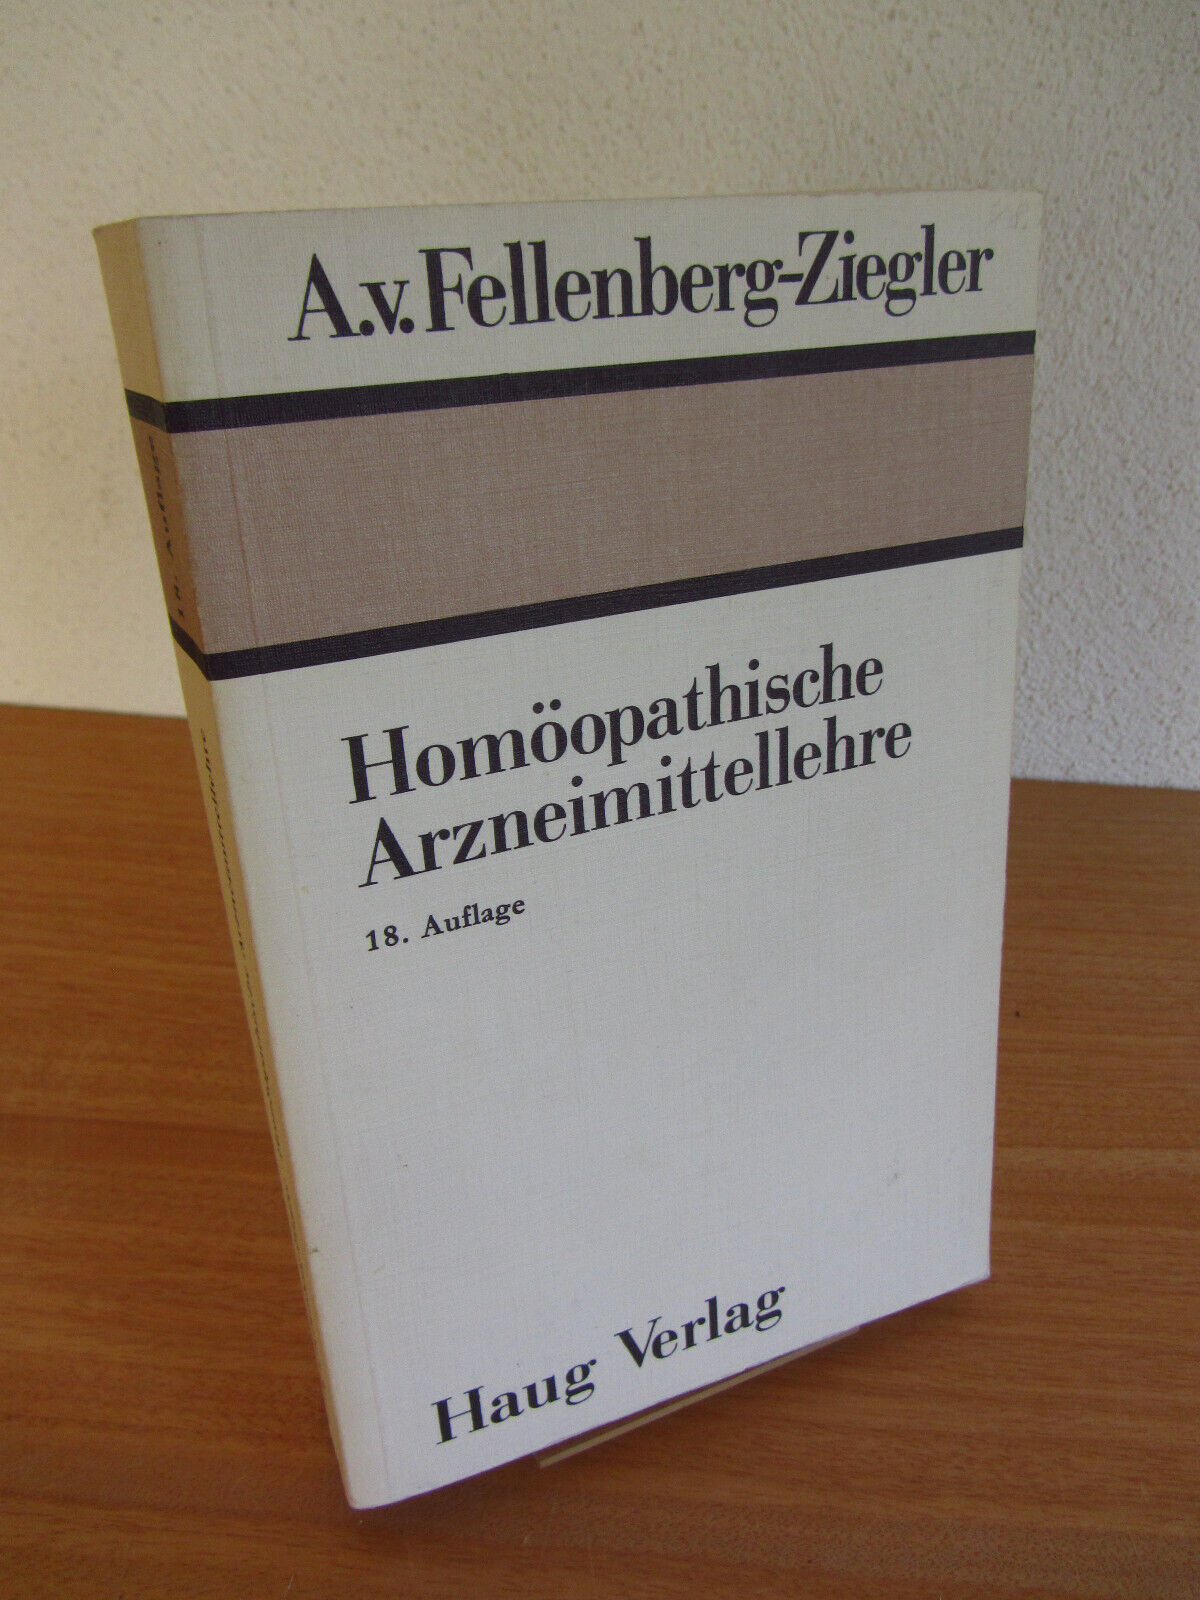 Homöopathische Arzneimittellehre 18.Auflage Fellenberg-Ziegler HAUG. 1980 - A.v.Fellenberg-Ziegler